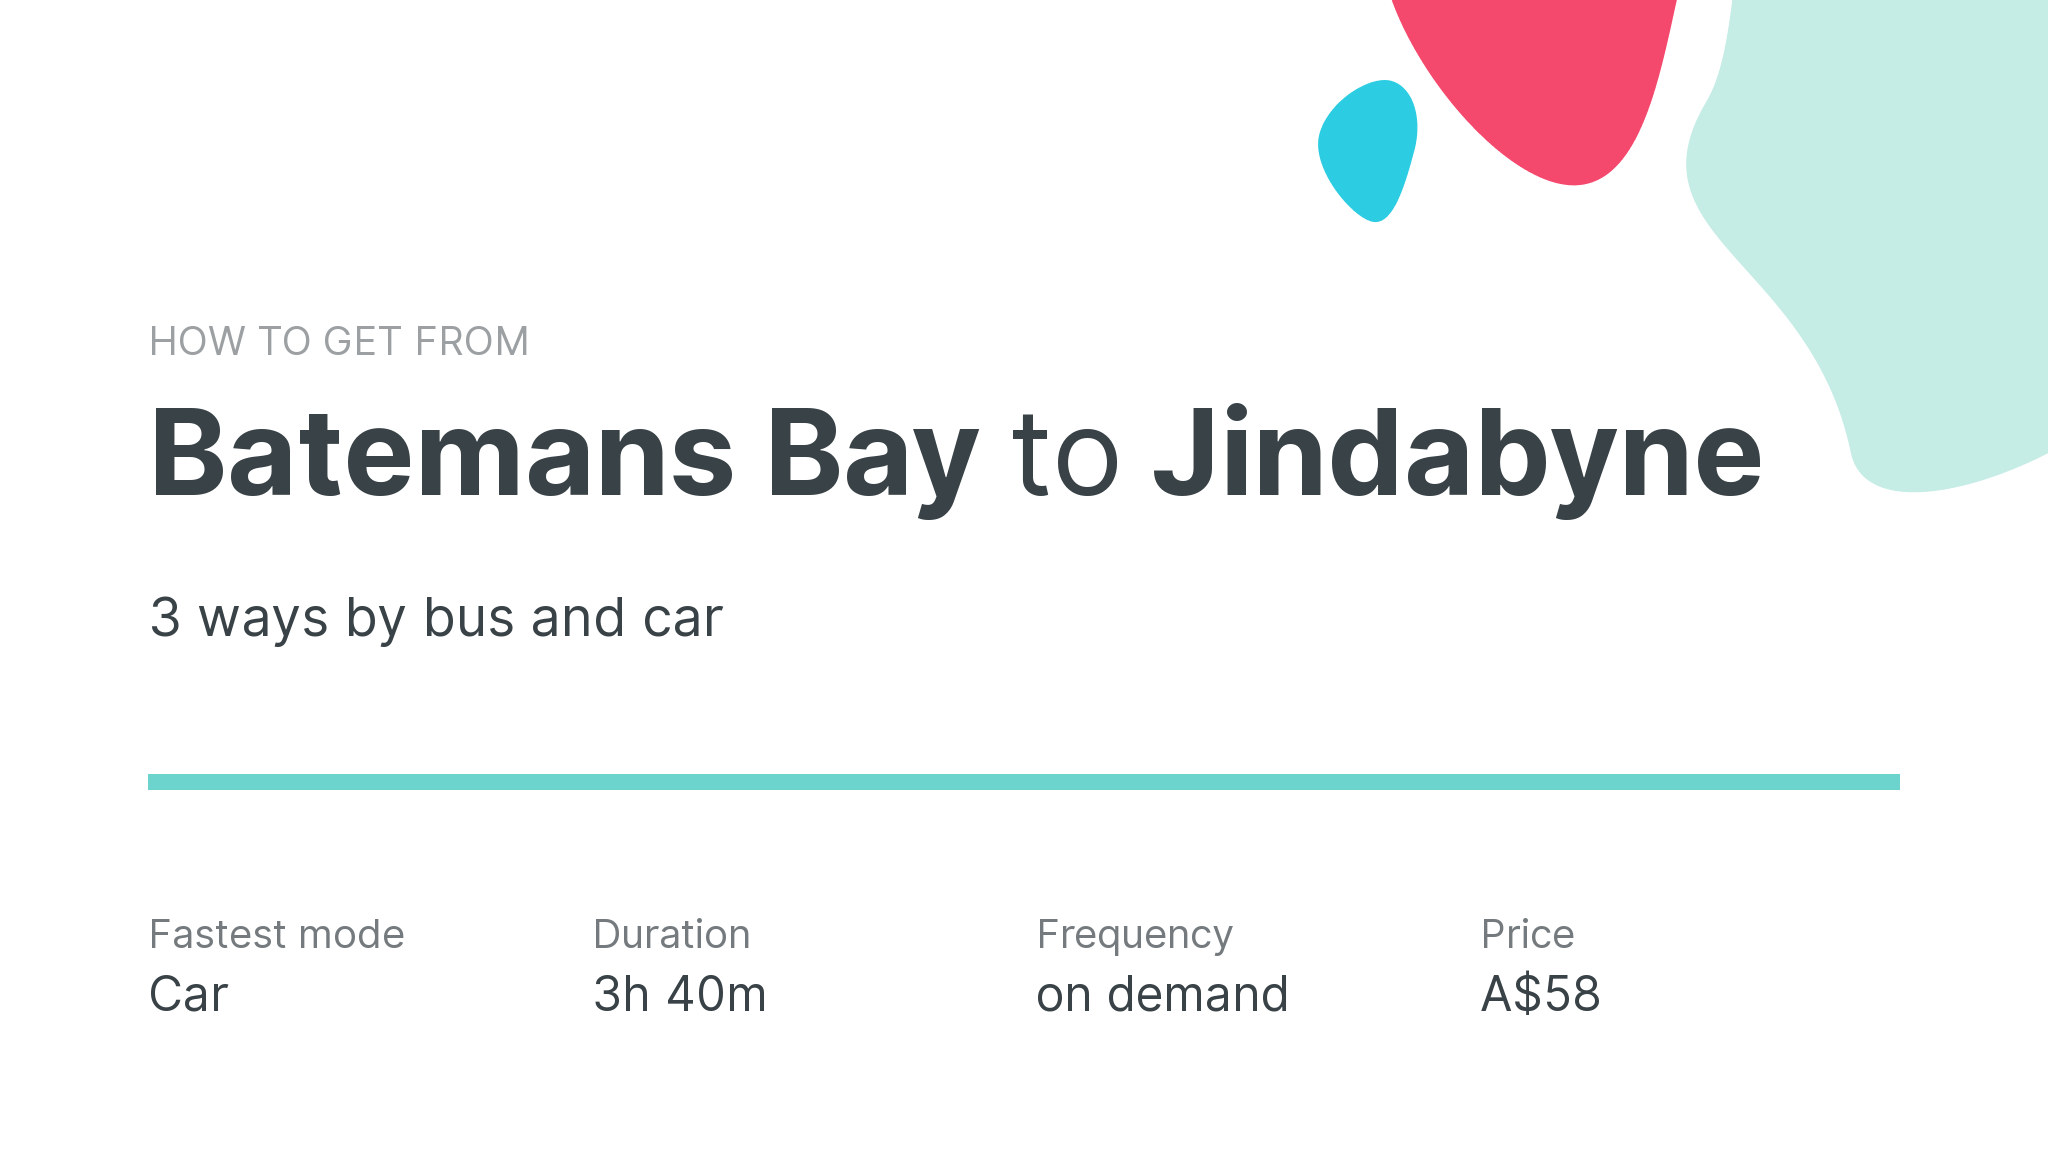 How do I get from Batemans Bay to Jindabyne